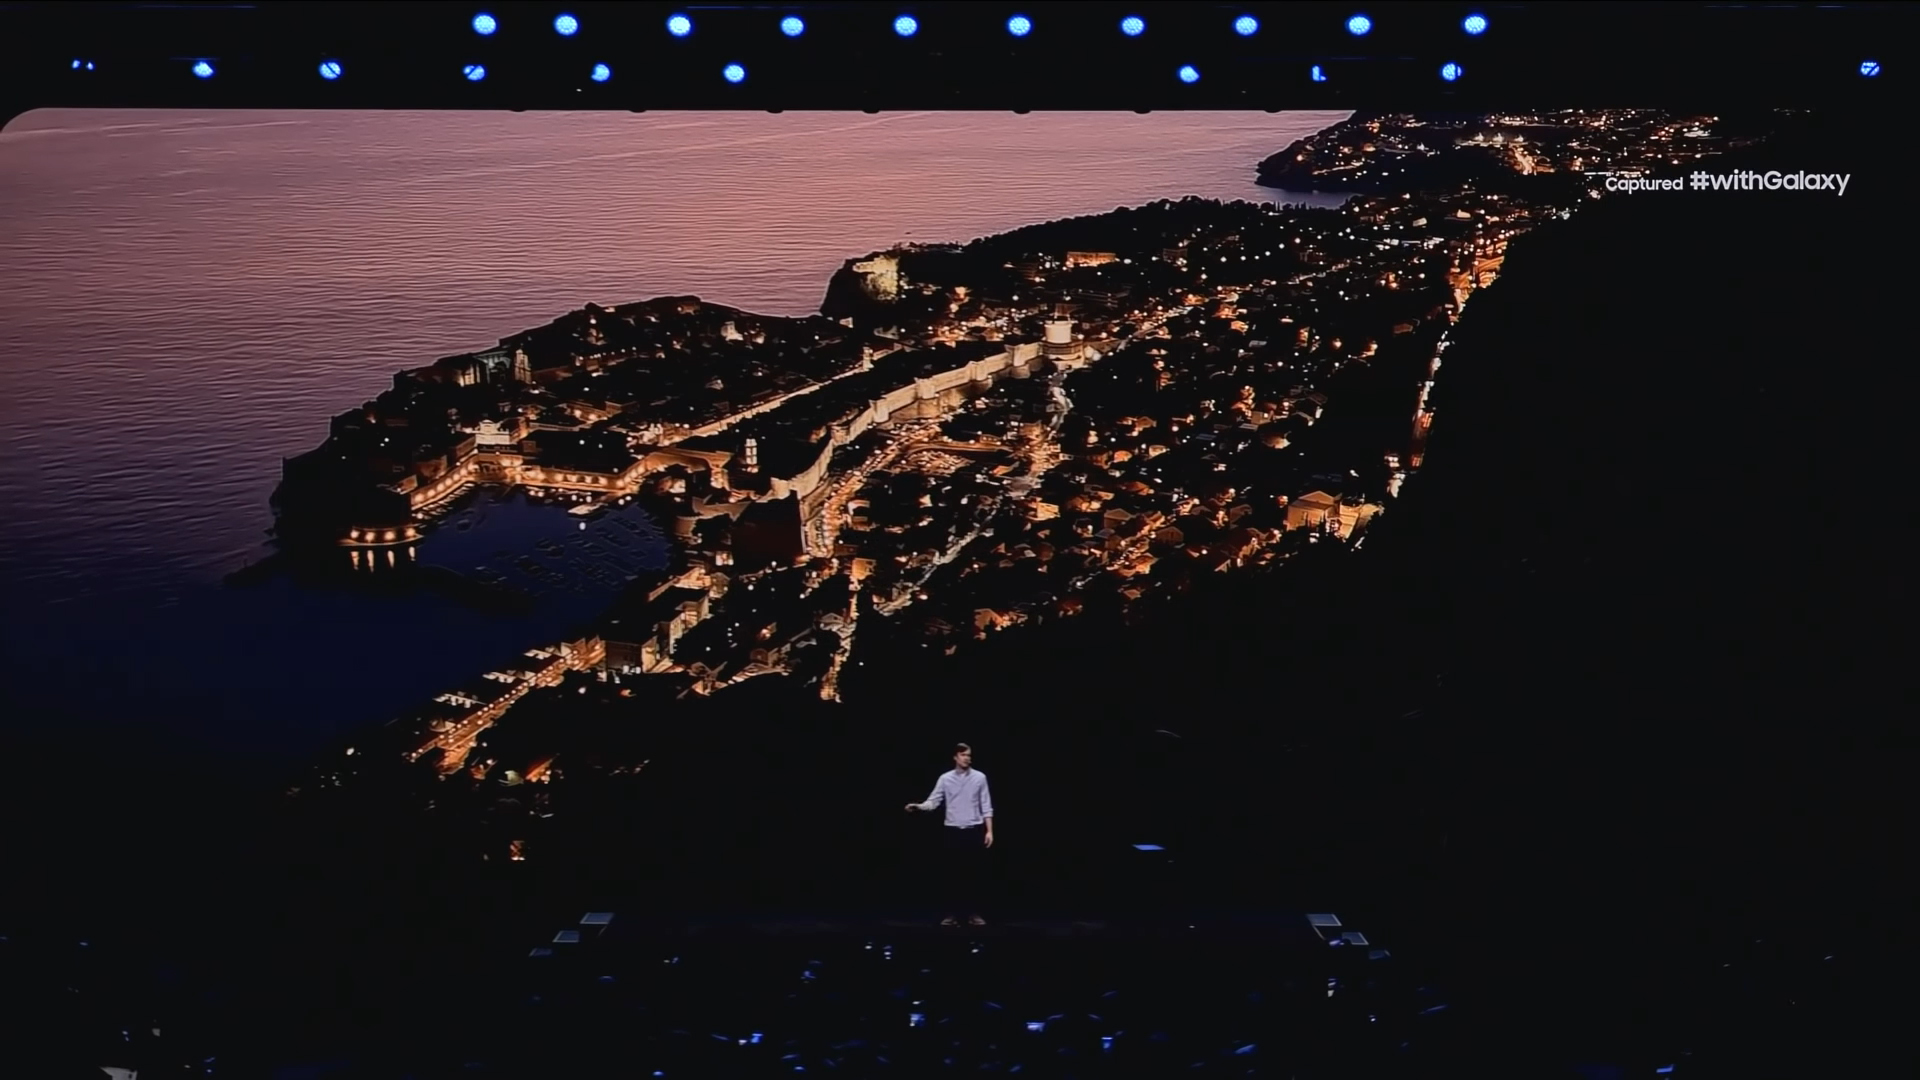 Kako bi demonstrirali sposobnosti kamera u mraku, iz Samsunga su otišli na brda iznad Dubrovnika kako bi uhvatili ovu krasnu sliku grada noću, s kojom su se pohvalili na pozornici.